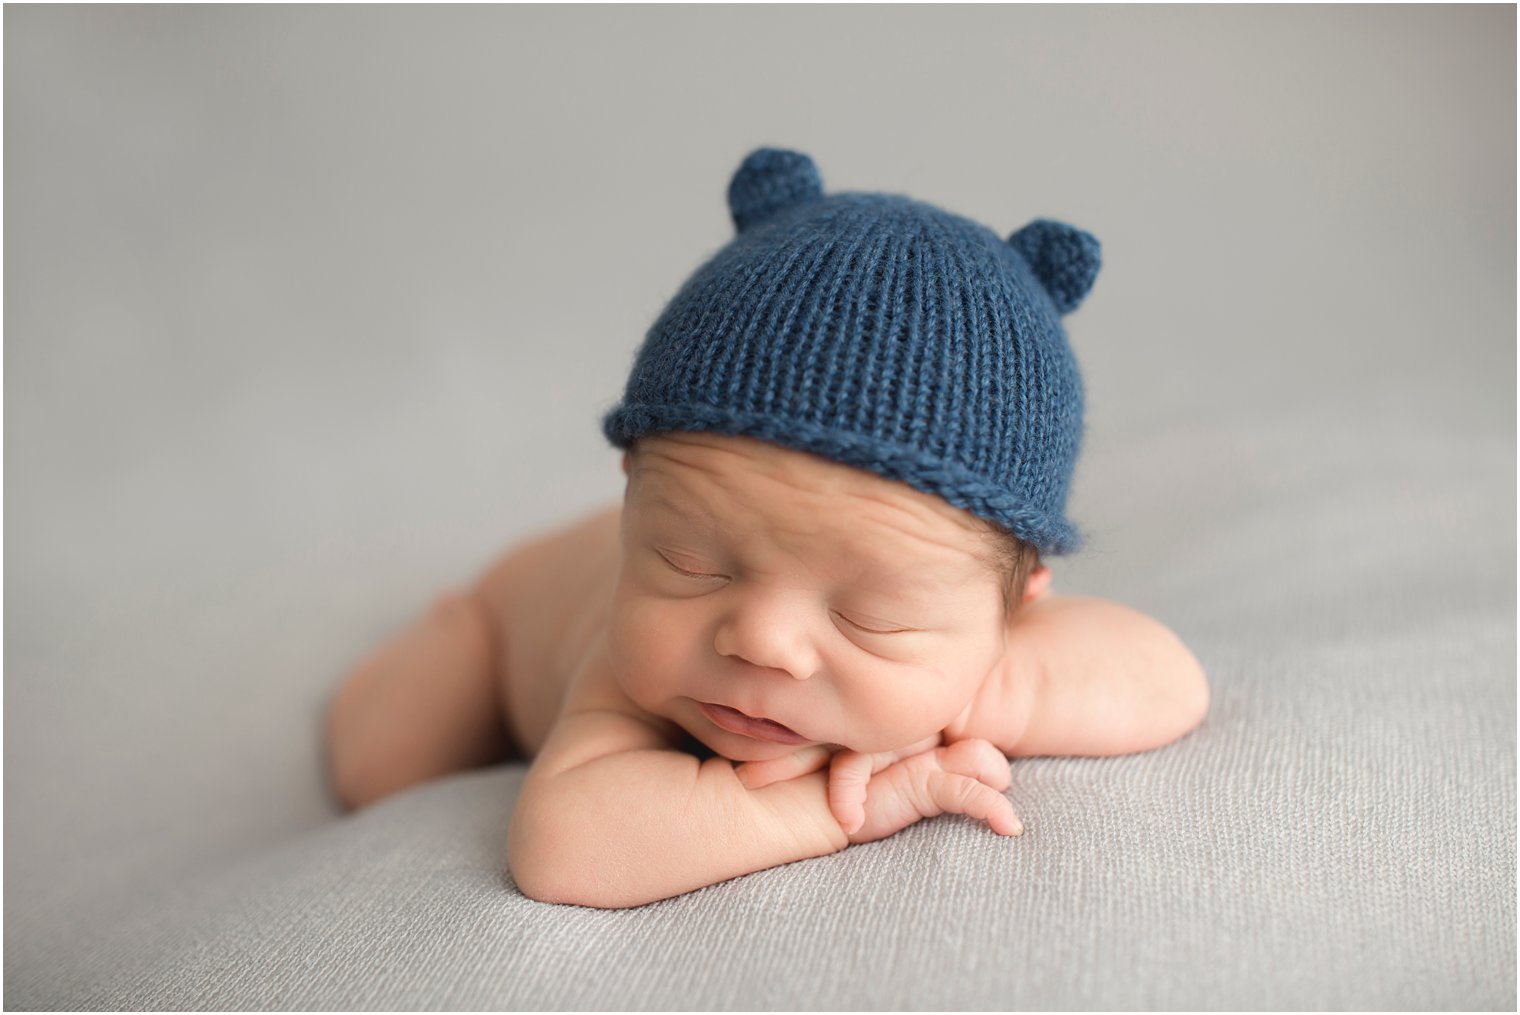 newborn boy in knit hat with ears